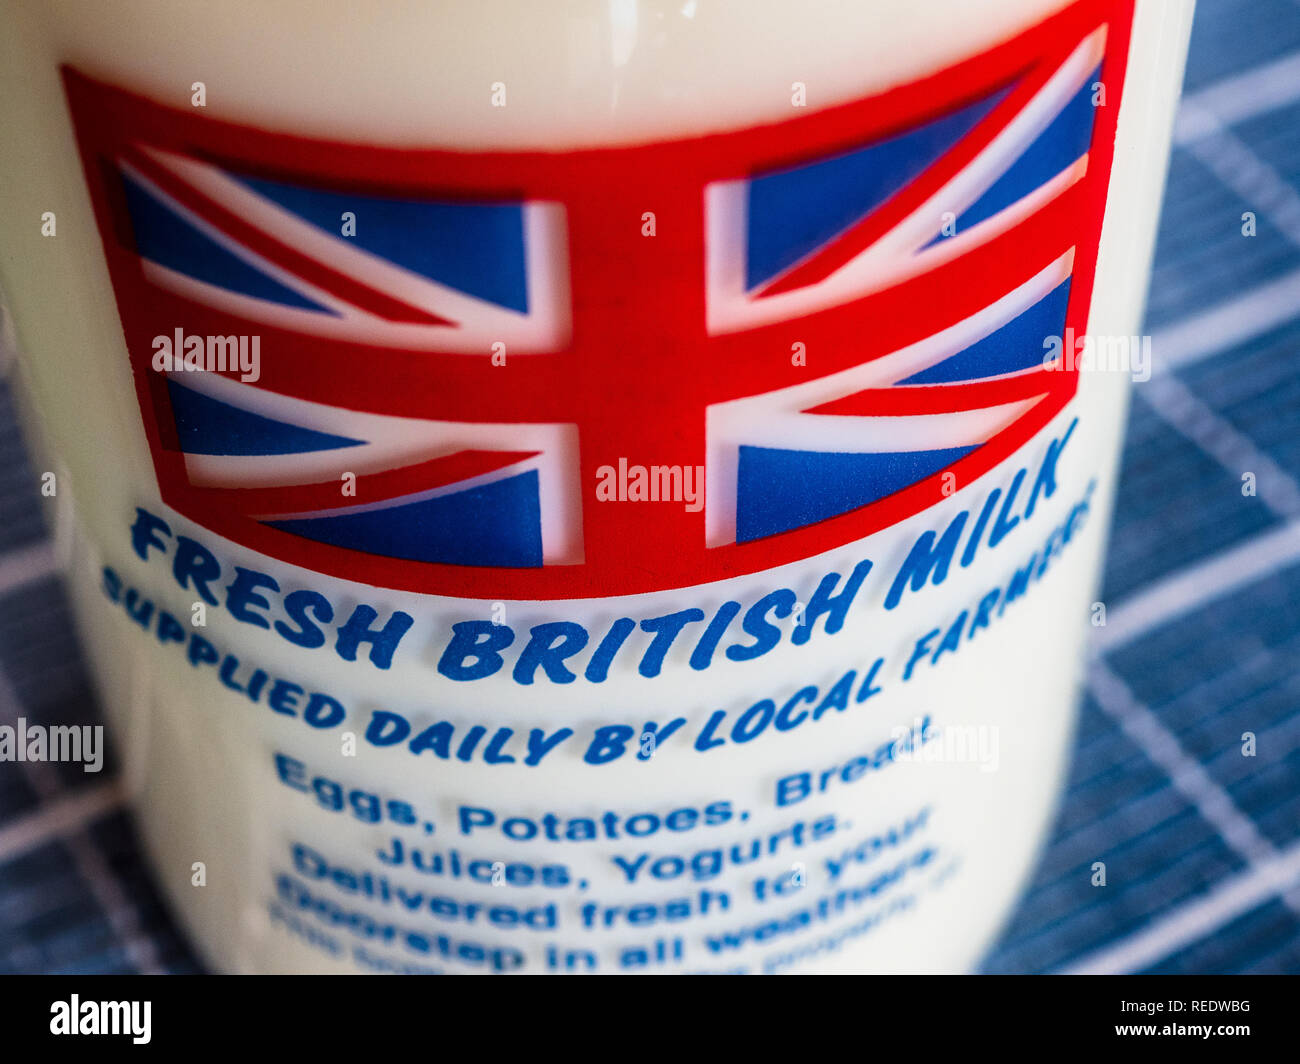 Bouteille de lait - lait britannique appelée produits locaux frais Lait britannique Banque D'Images